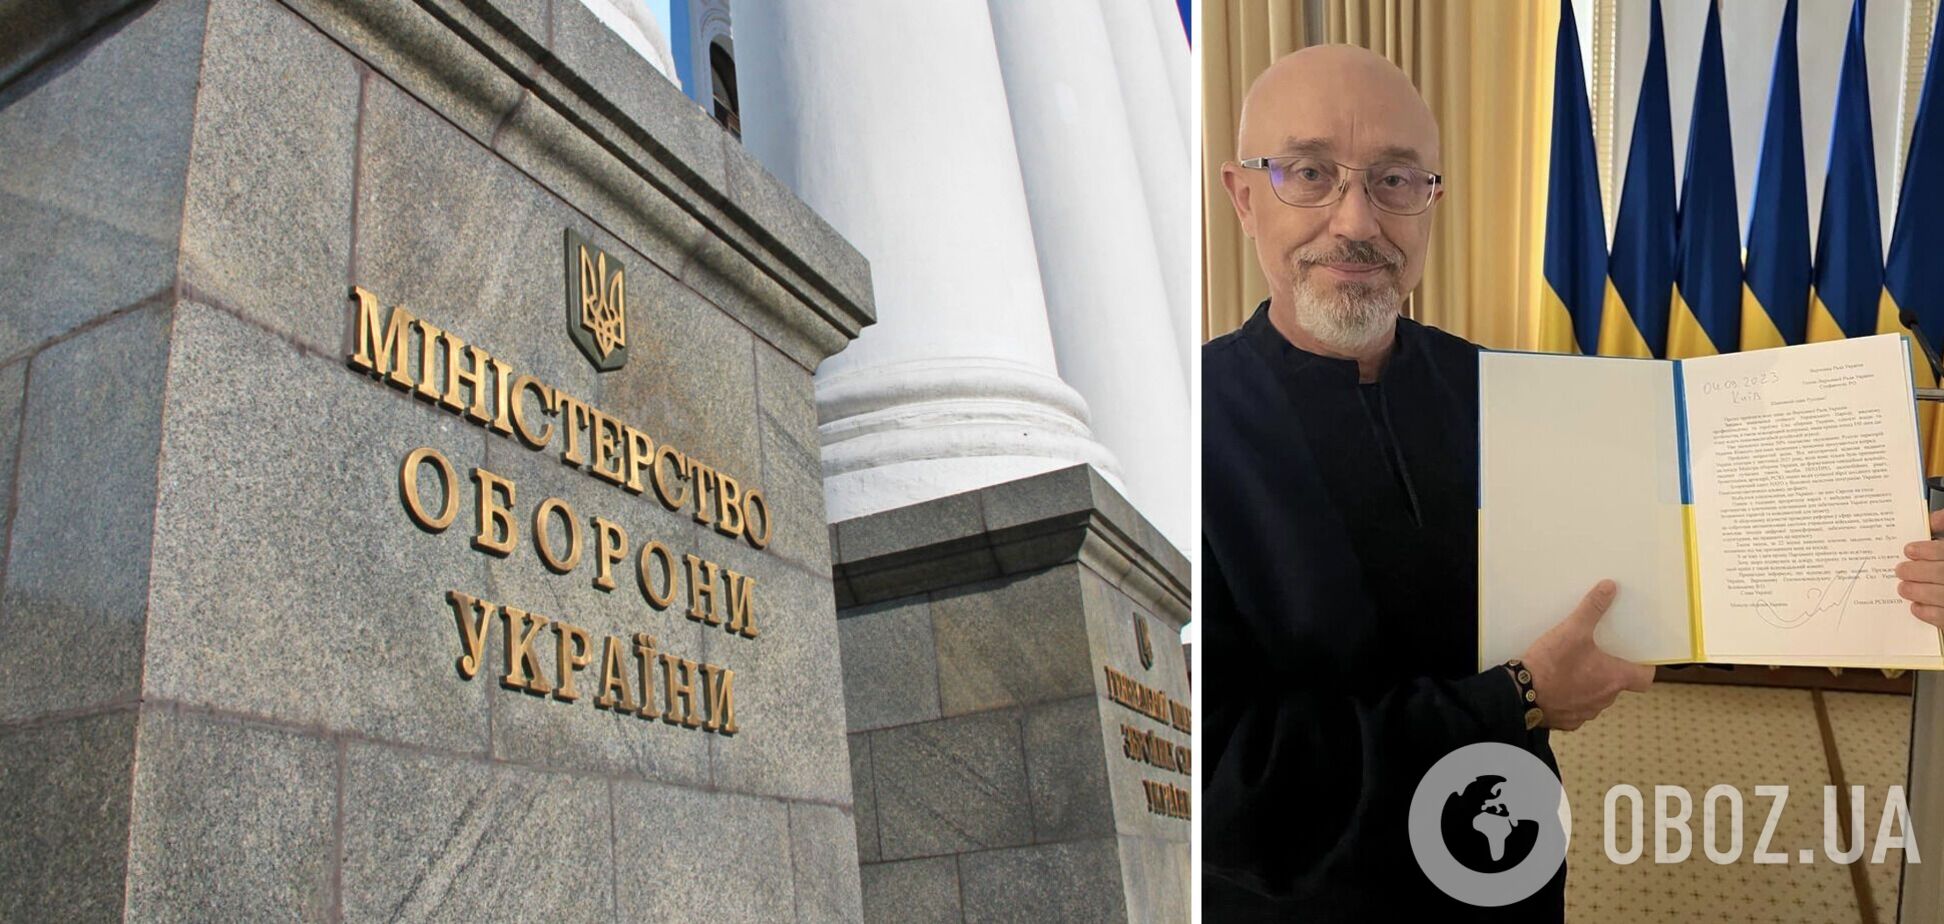 Резников подал заявление об отставке с поста министра обороны: в комитете Рады поддержали решение